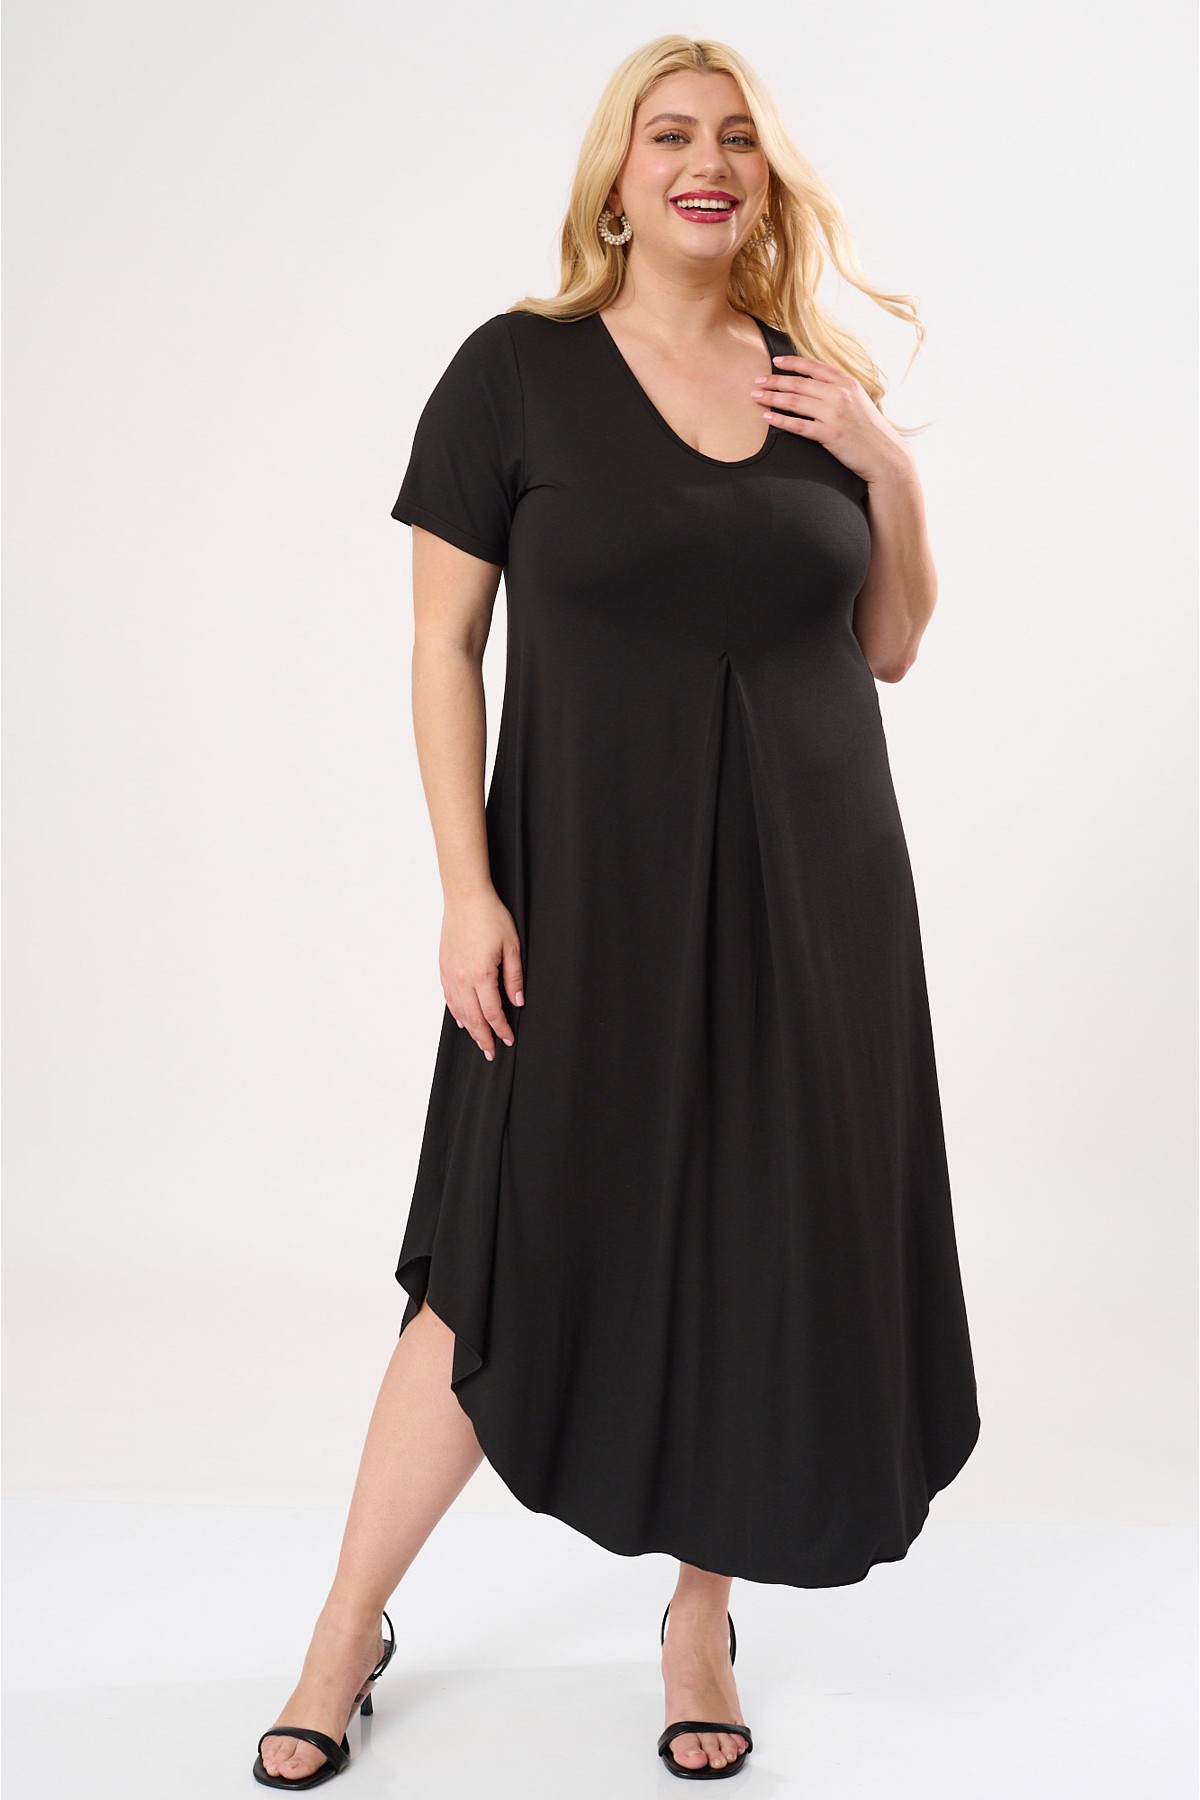 Φόρεμα με κουφόπιετα μπροστά viscose με κοντό μανίκι μαύρο